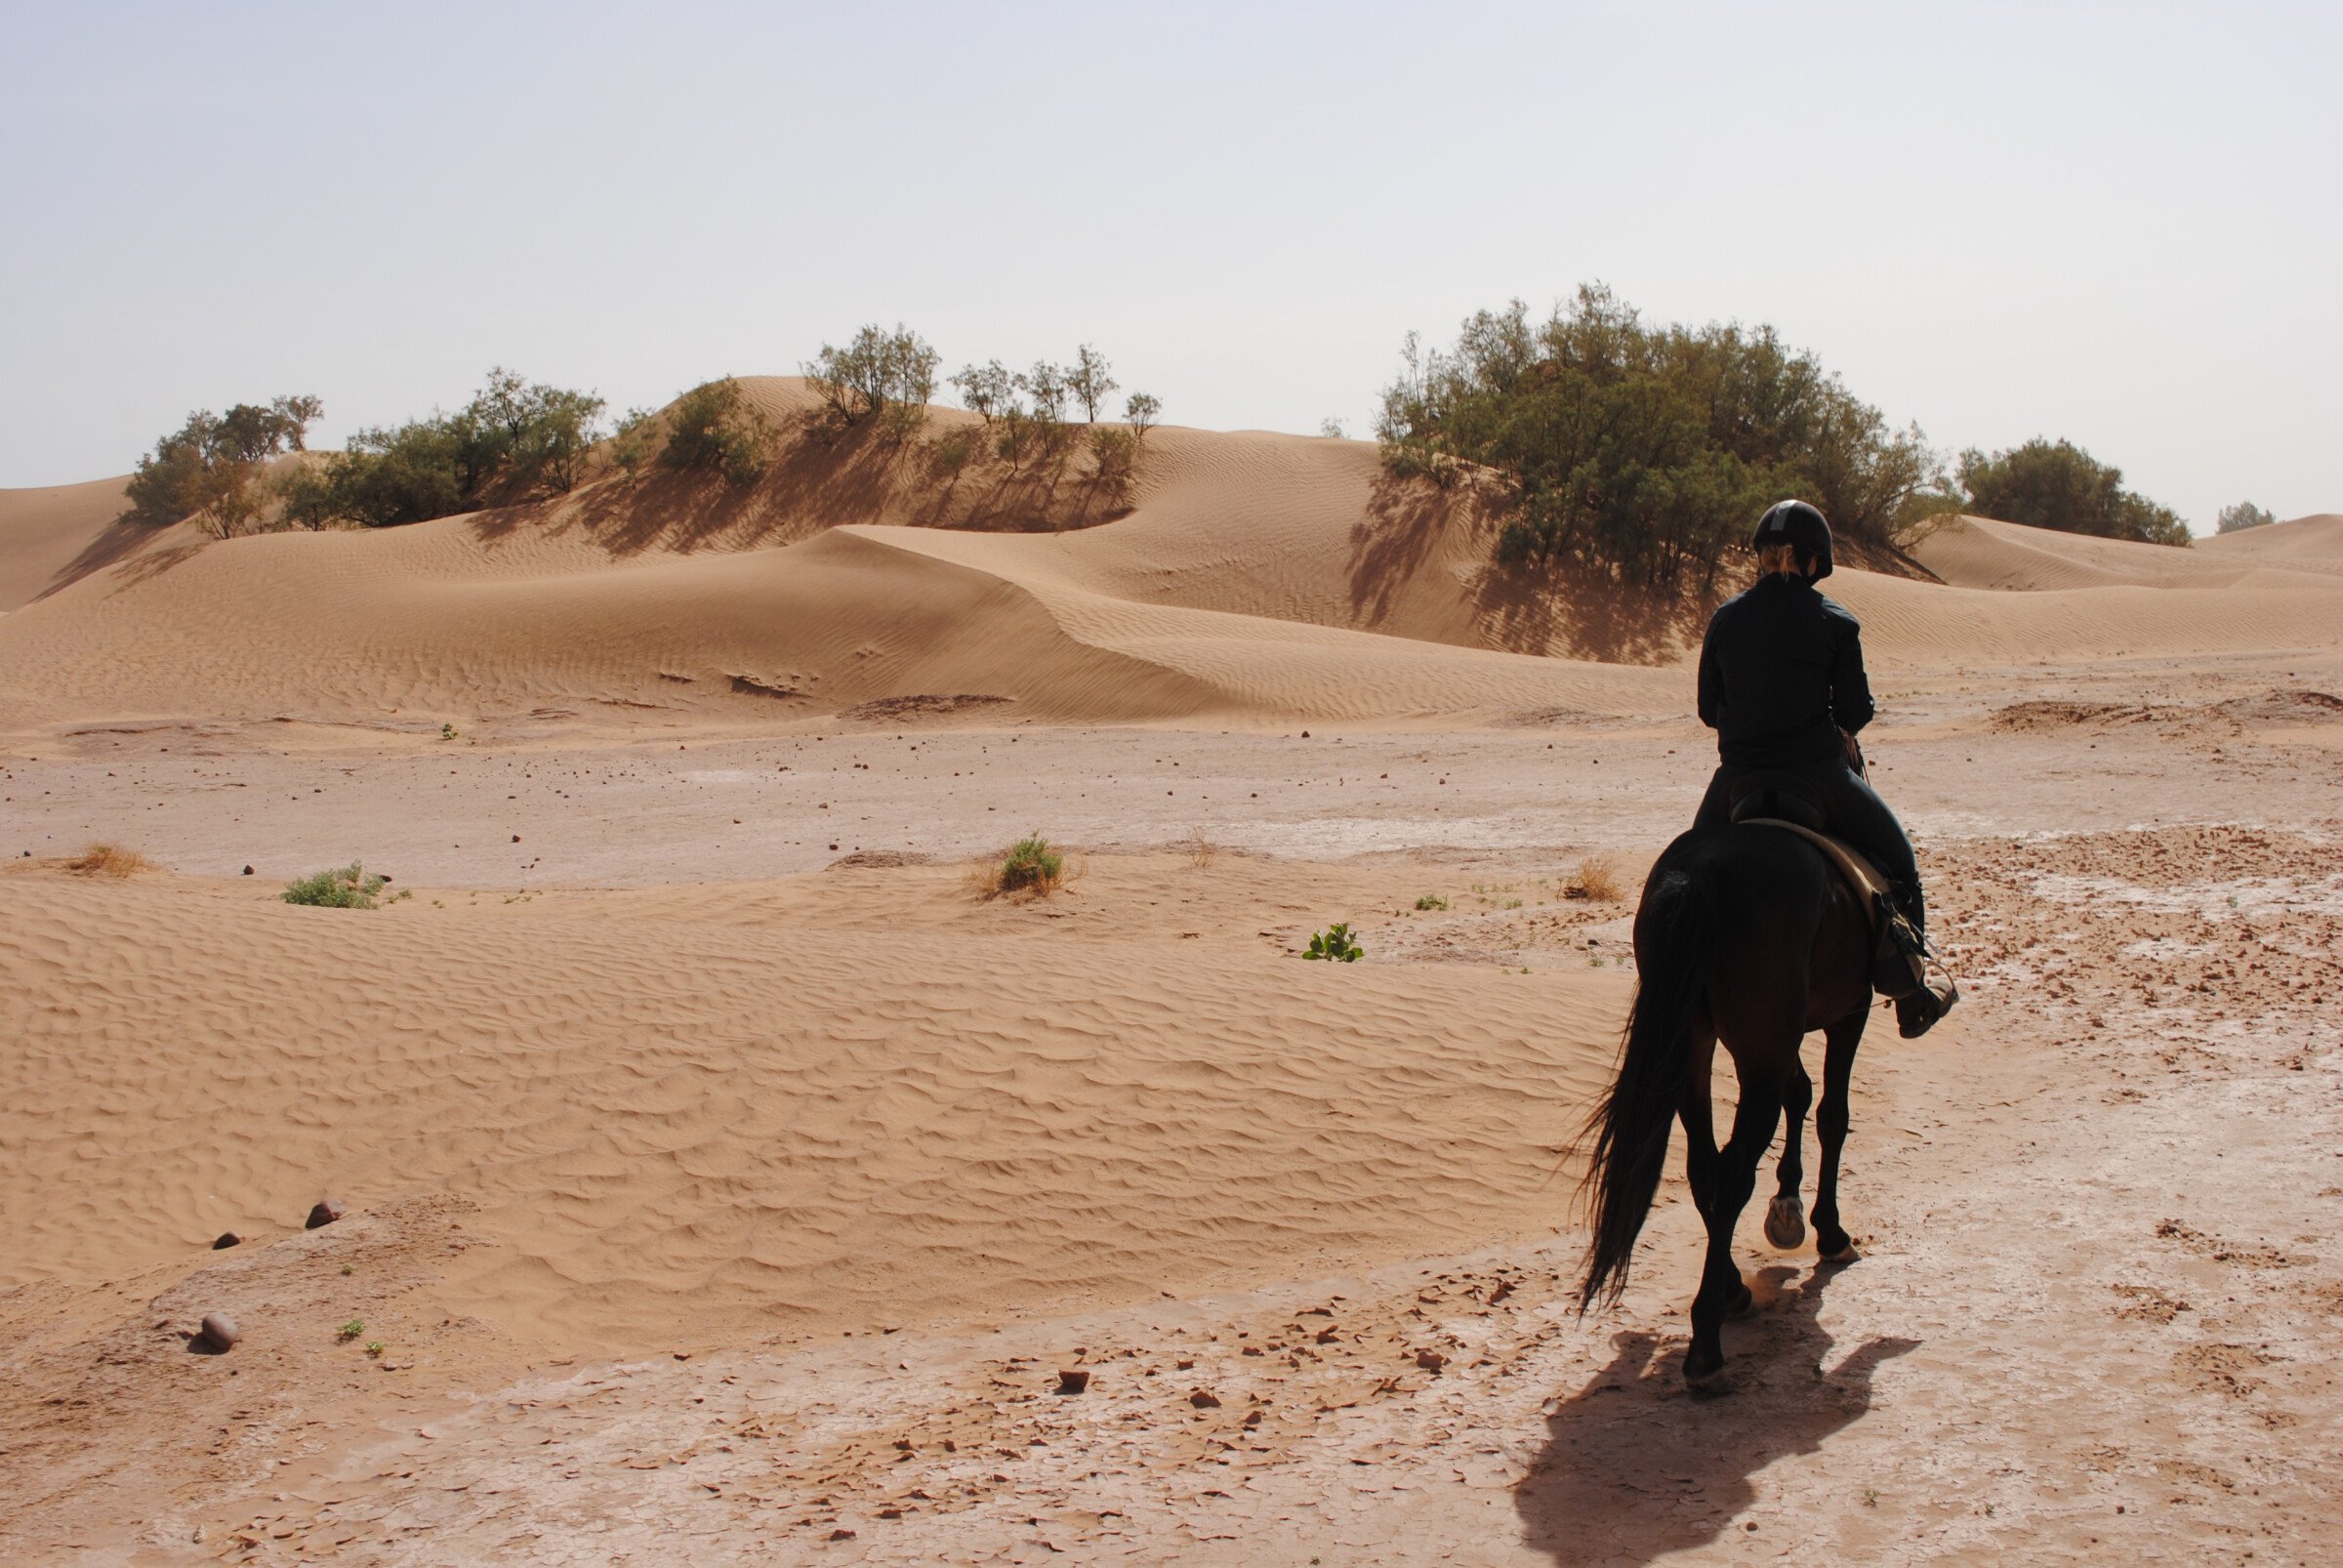 Die Vorteile des Reitens: der Wüstenwanderritt